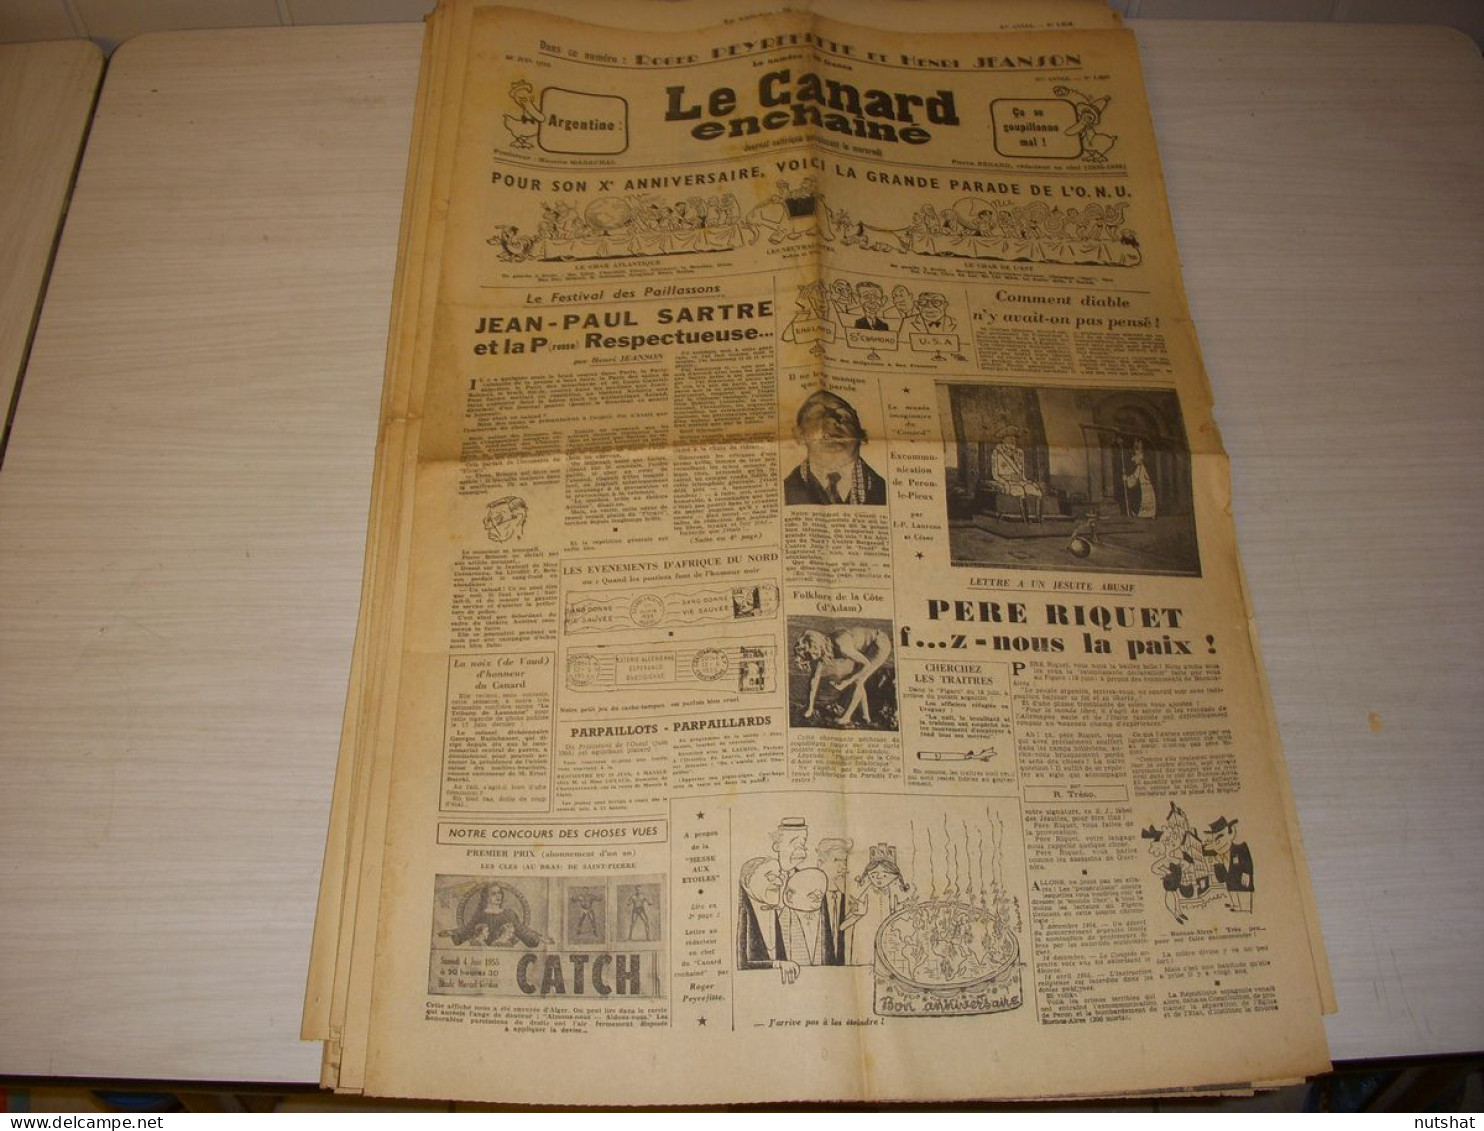 CANARD ENCHAINE 1809 22.06.1955 Henri SALVADOR Rene PLEVEN Alphonse JUIN SARTRE - Politica